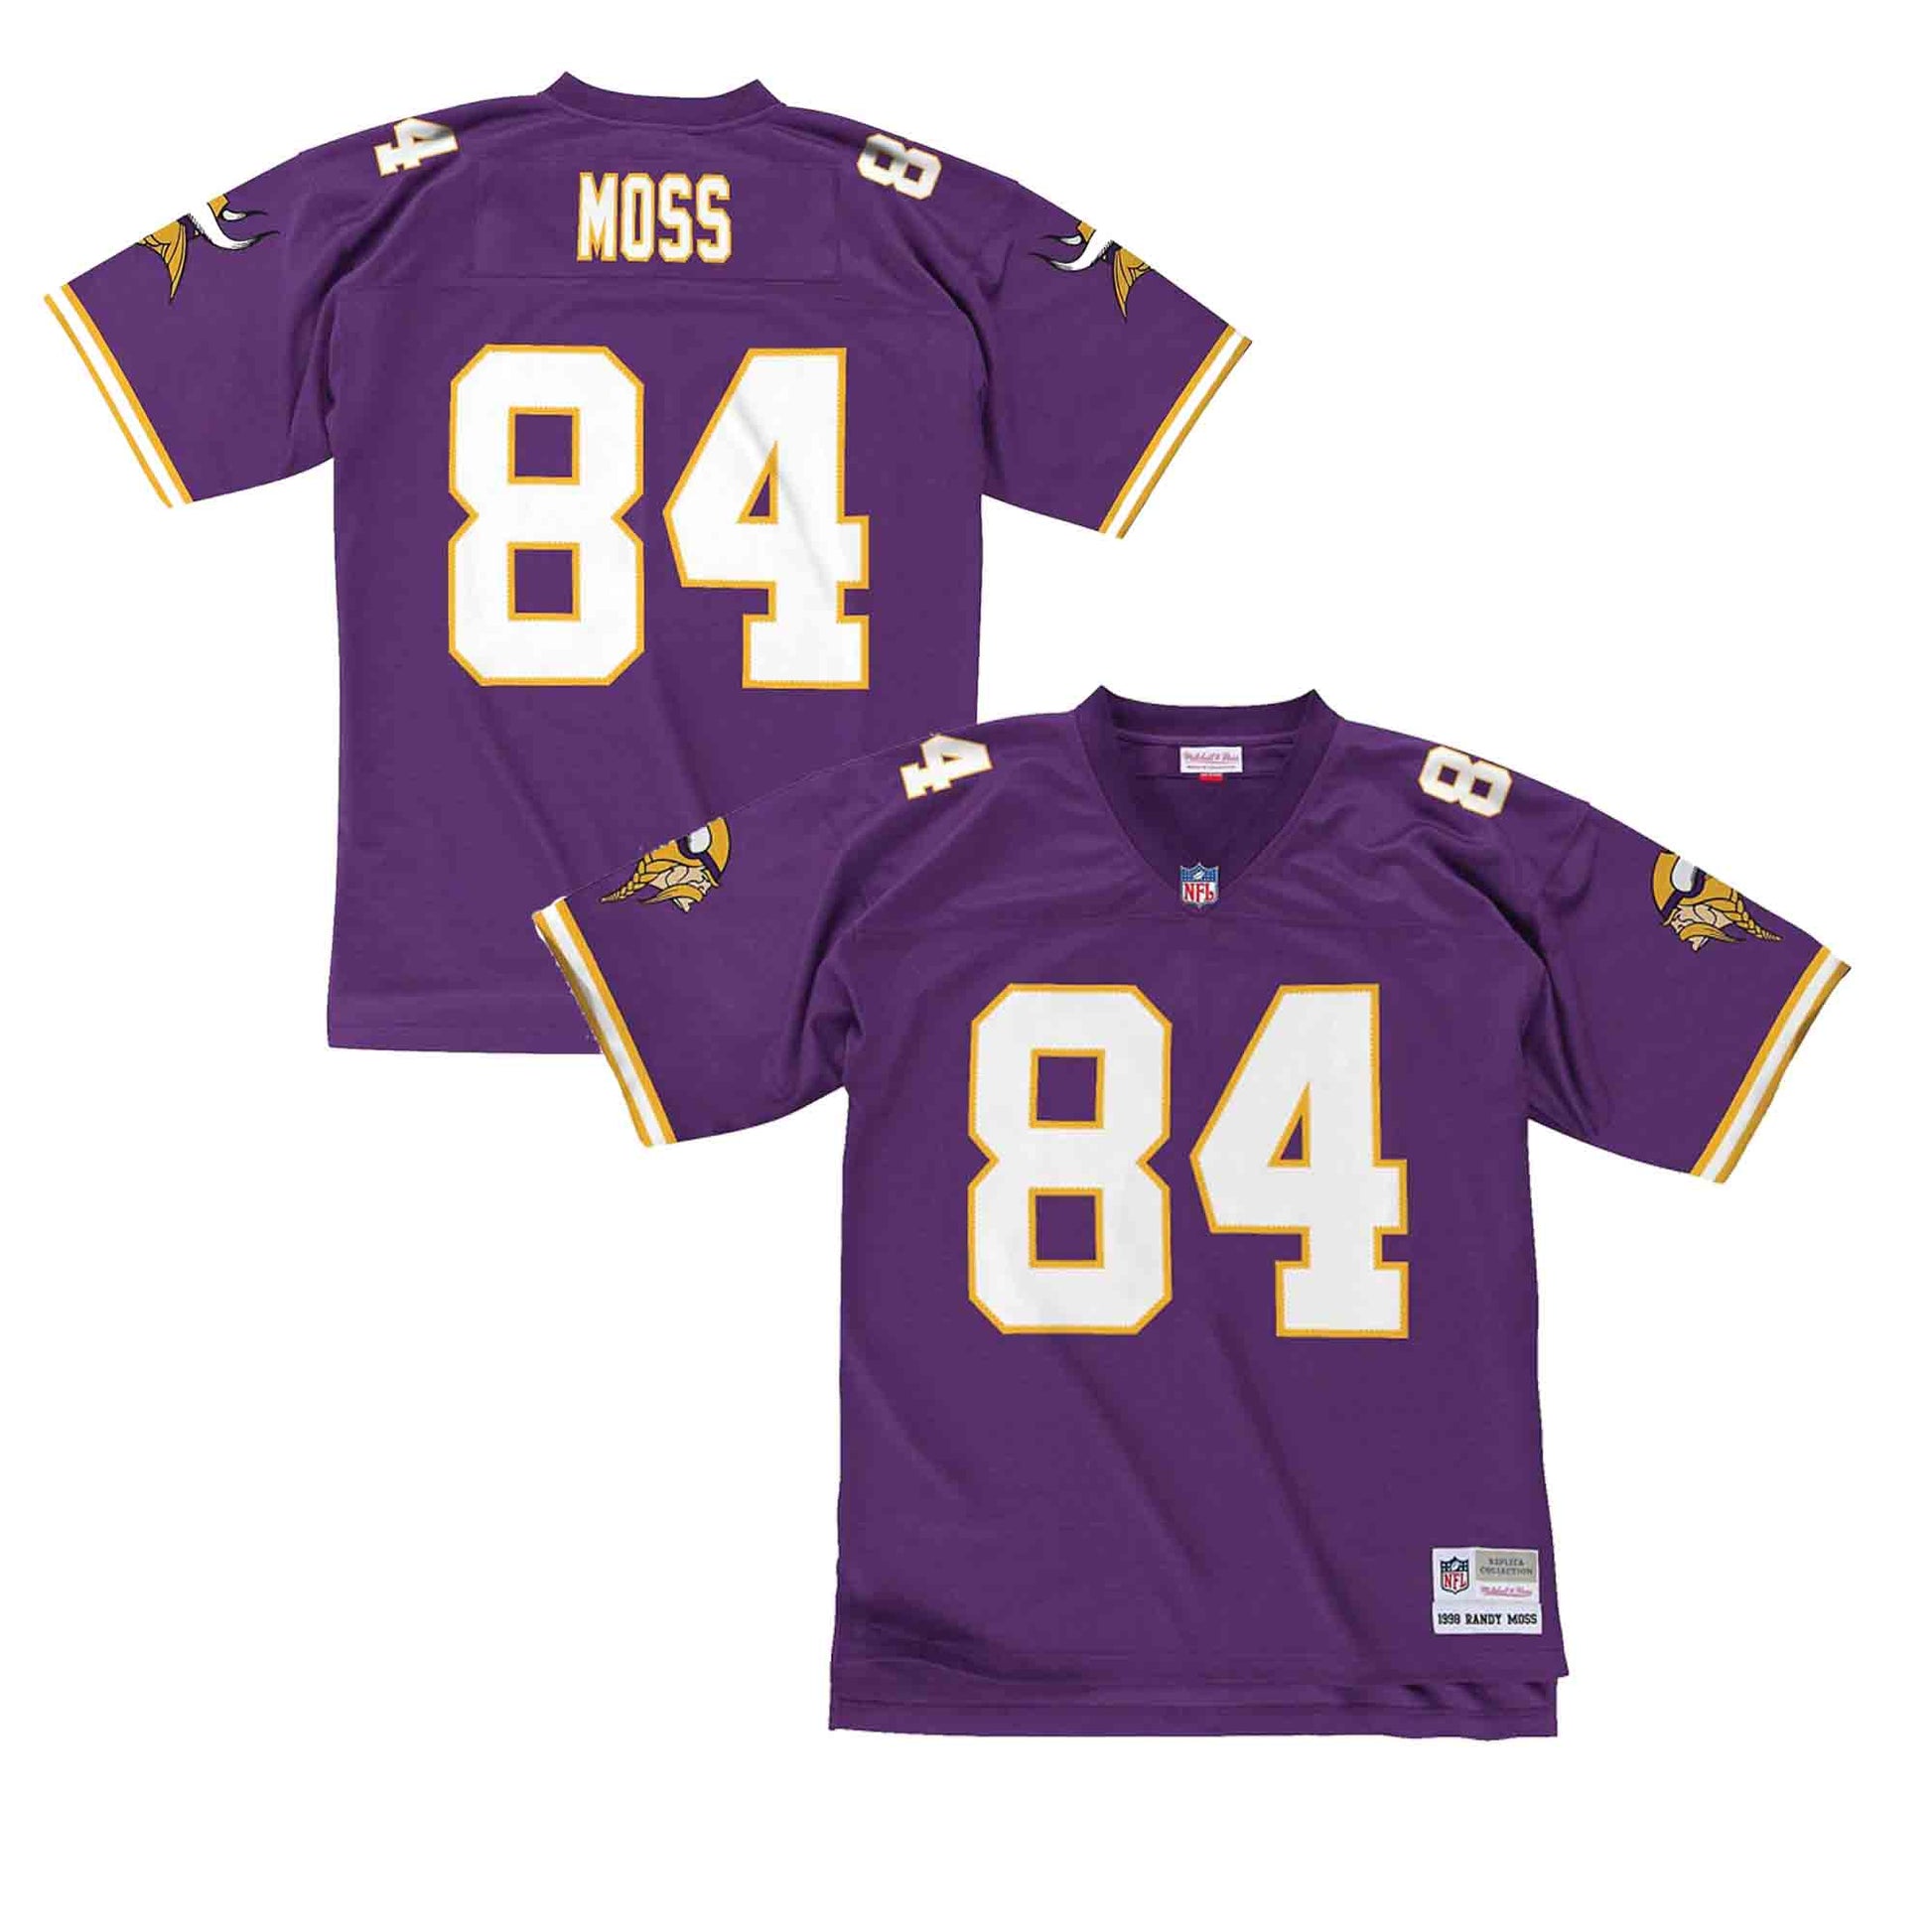 Minnesota Vikings #84 Randy Moss Custom Stitched Away Jersey - AME Sports